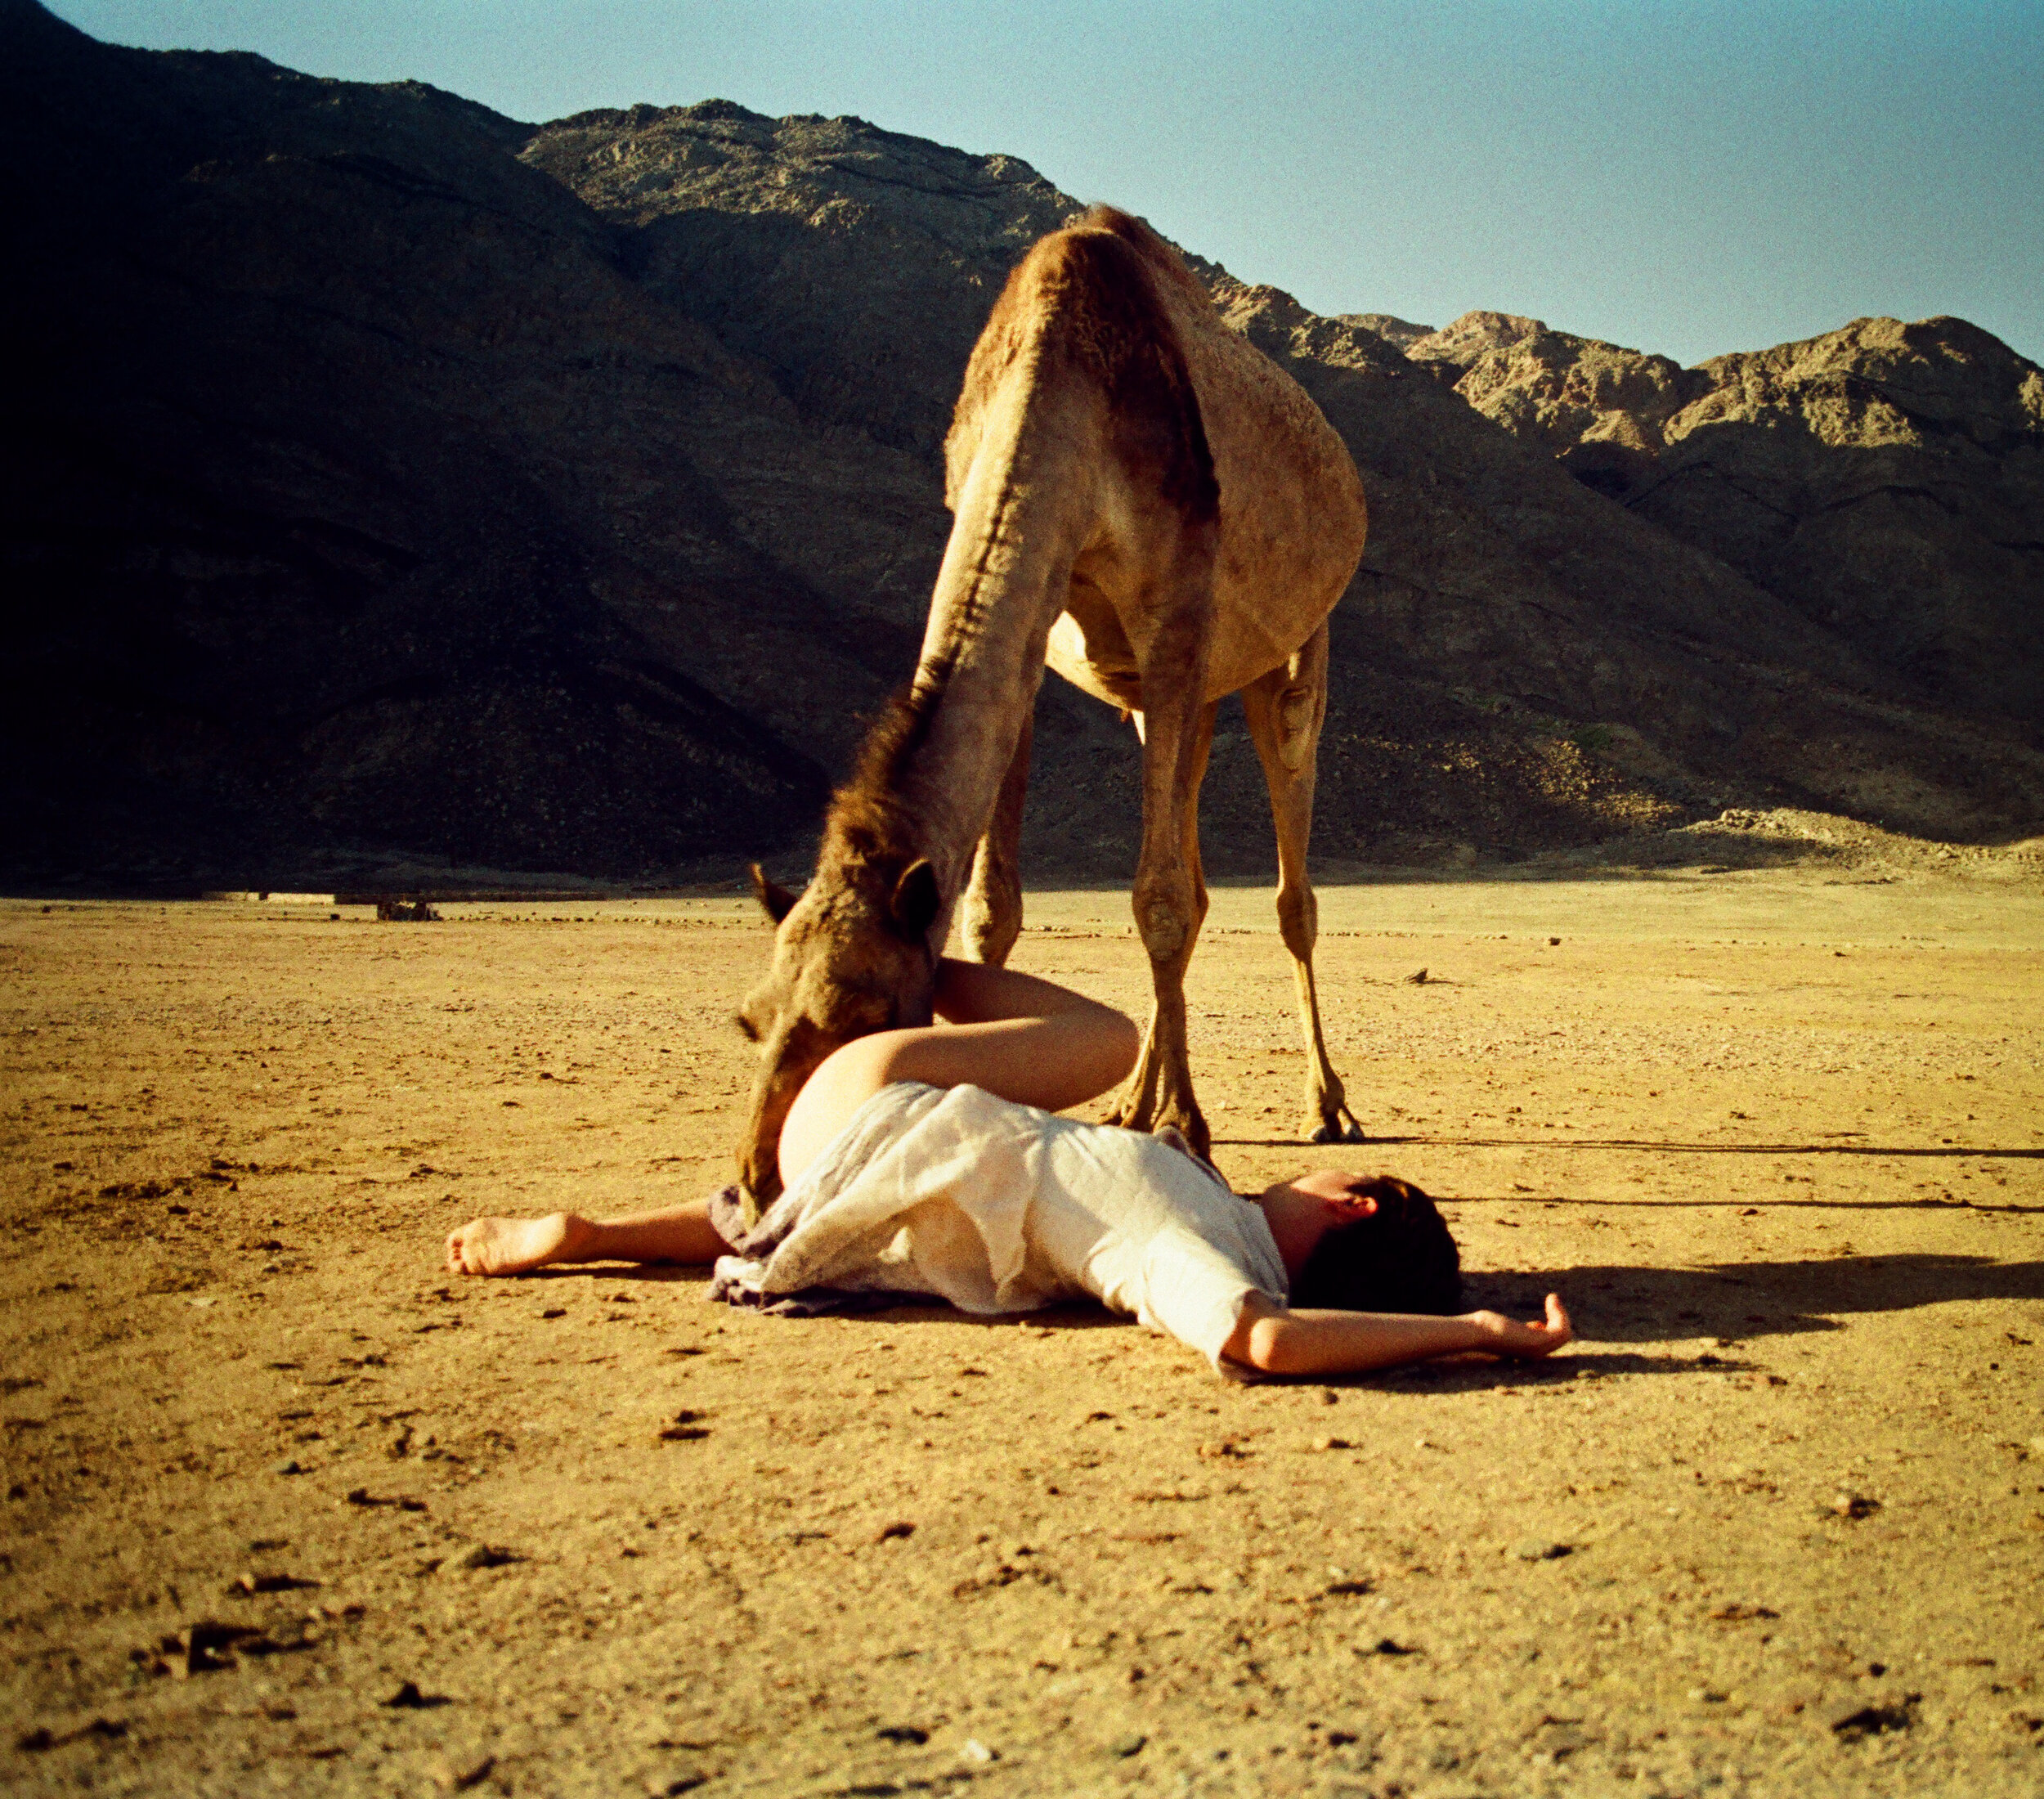  the camel whisperer - Dahab, South Sinai Desert, Egypt, 2018 